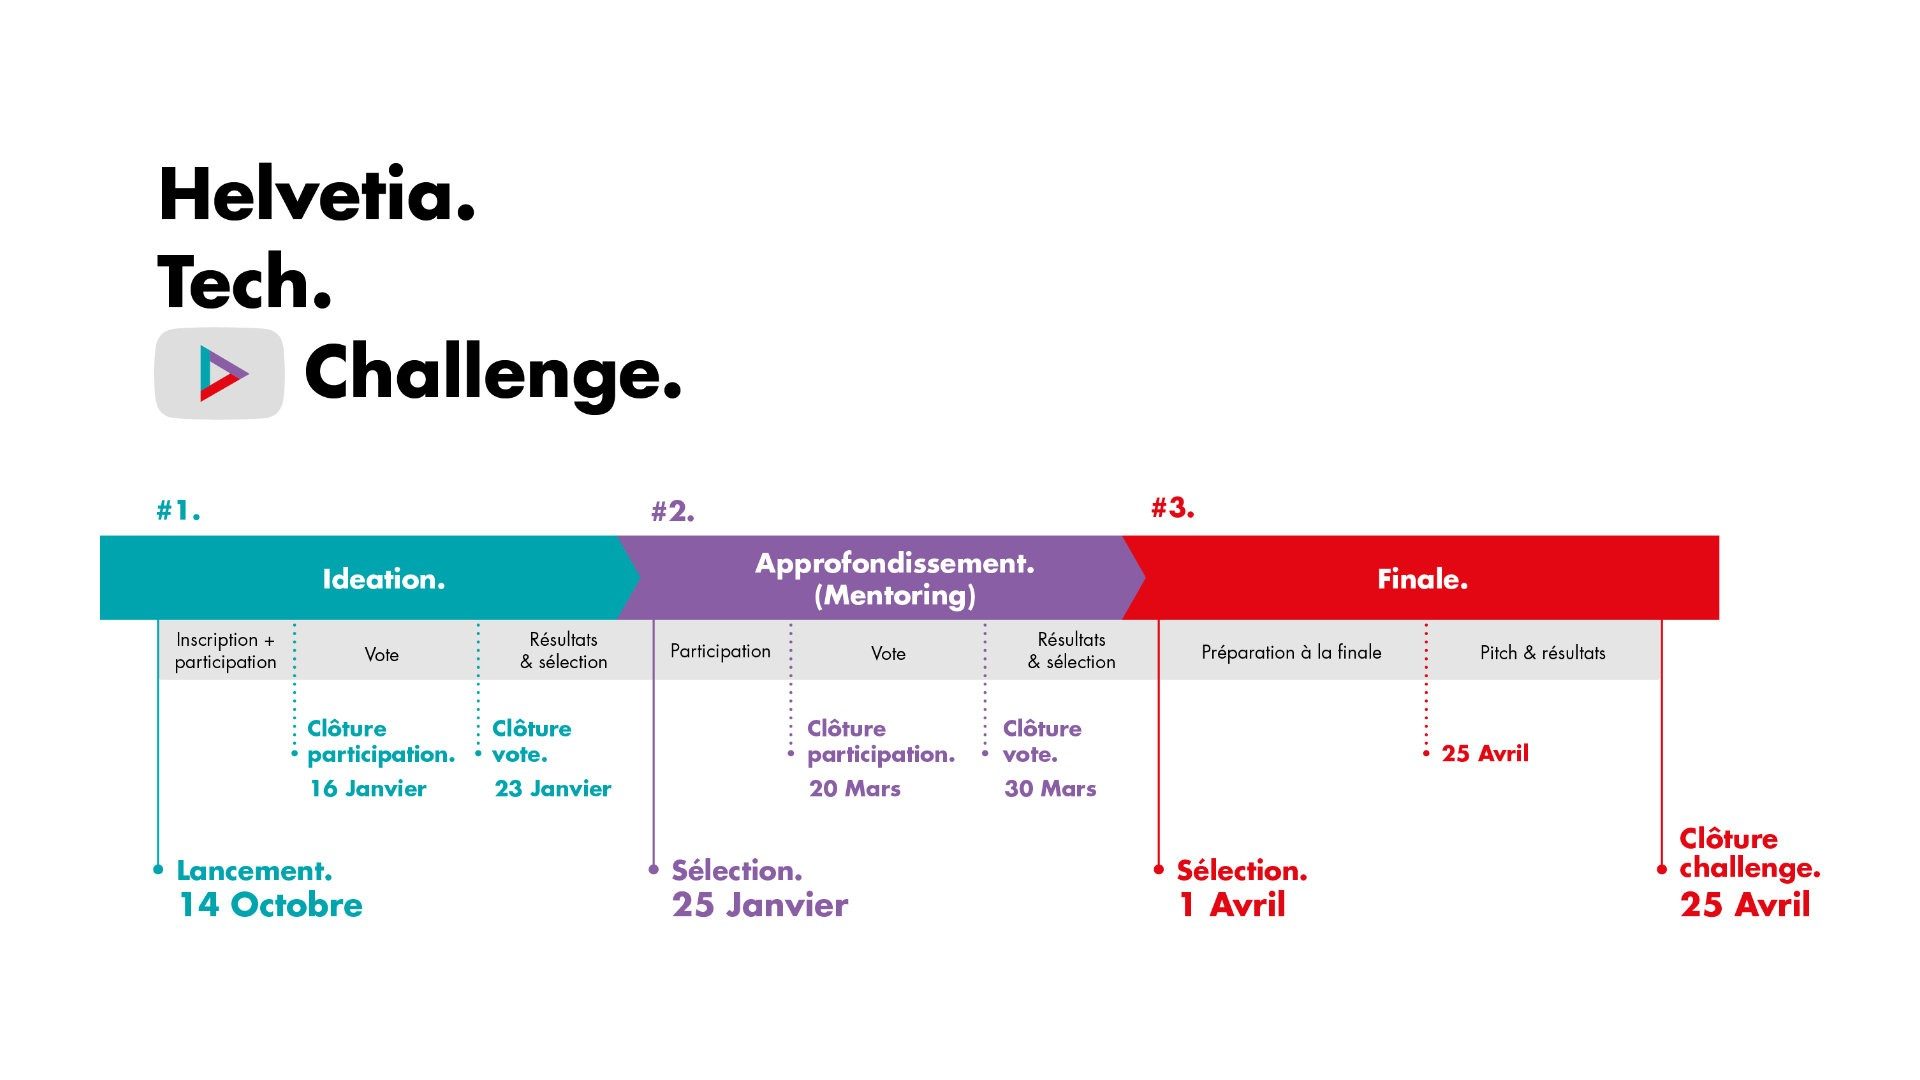 Le-lancement-du-Helvetia-Tech-Challenge-pour-susciter-la-creation-de-projets-innovants-05